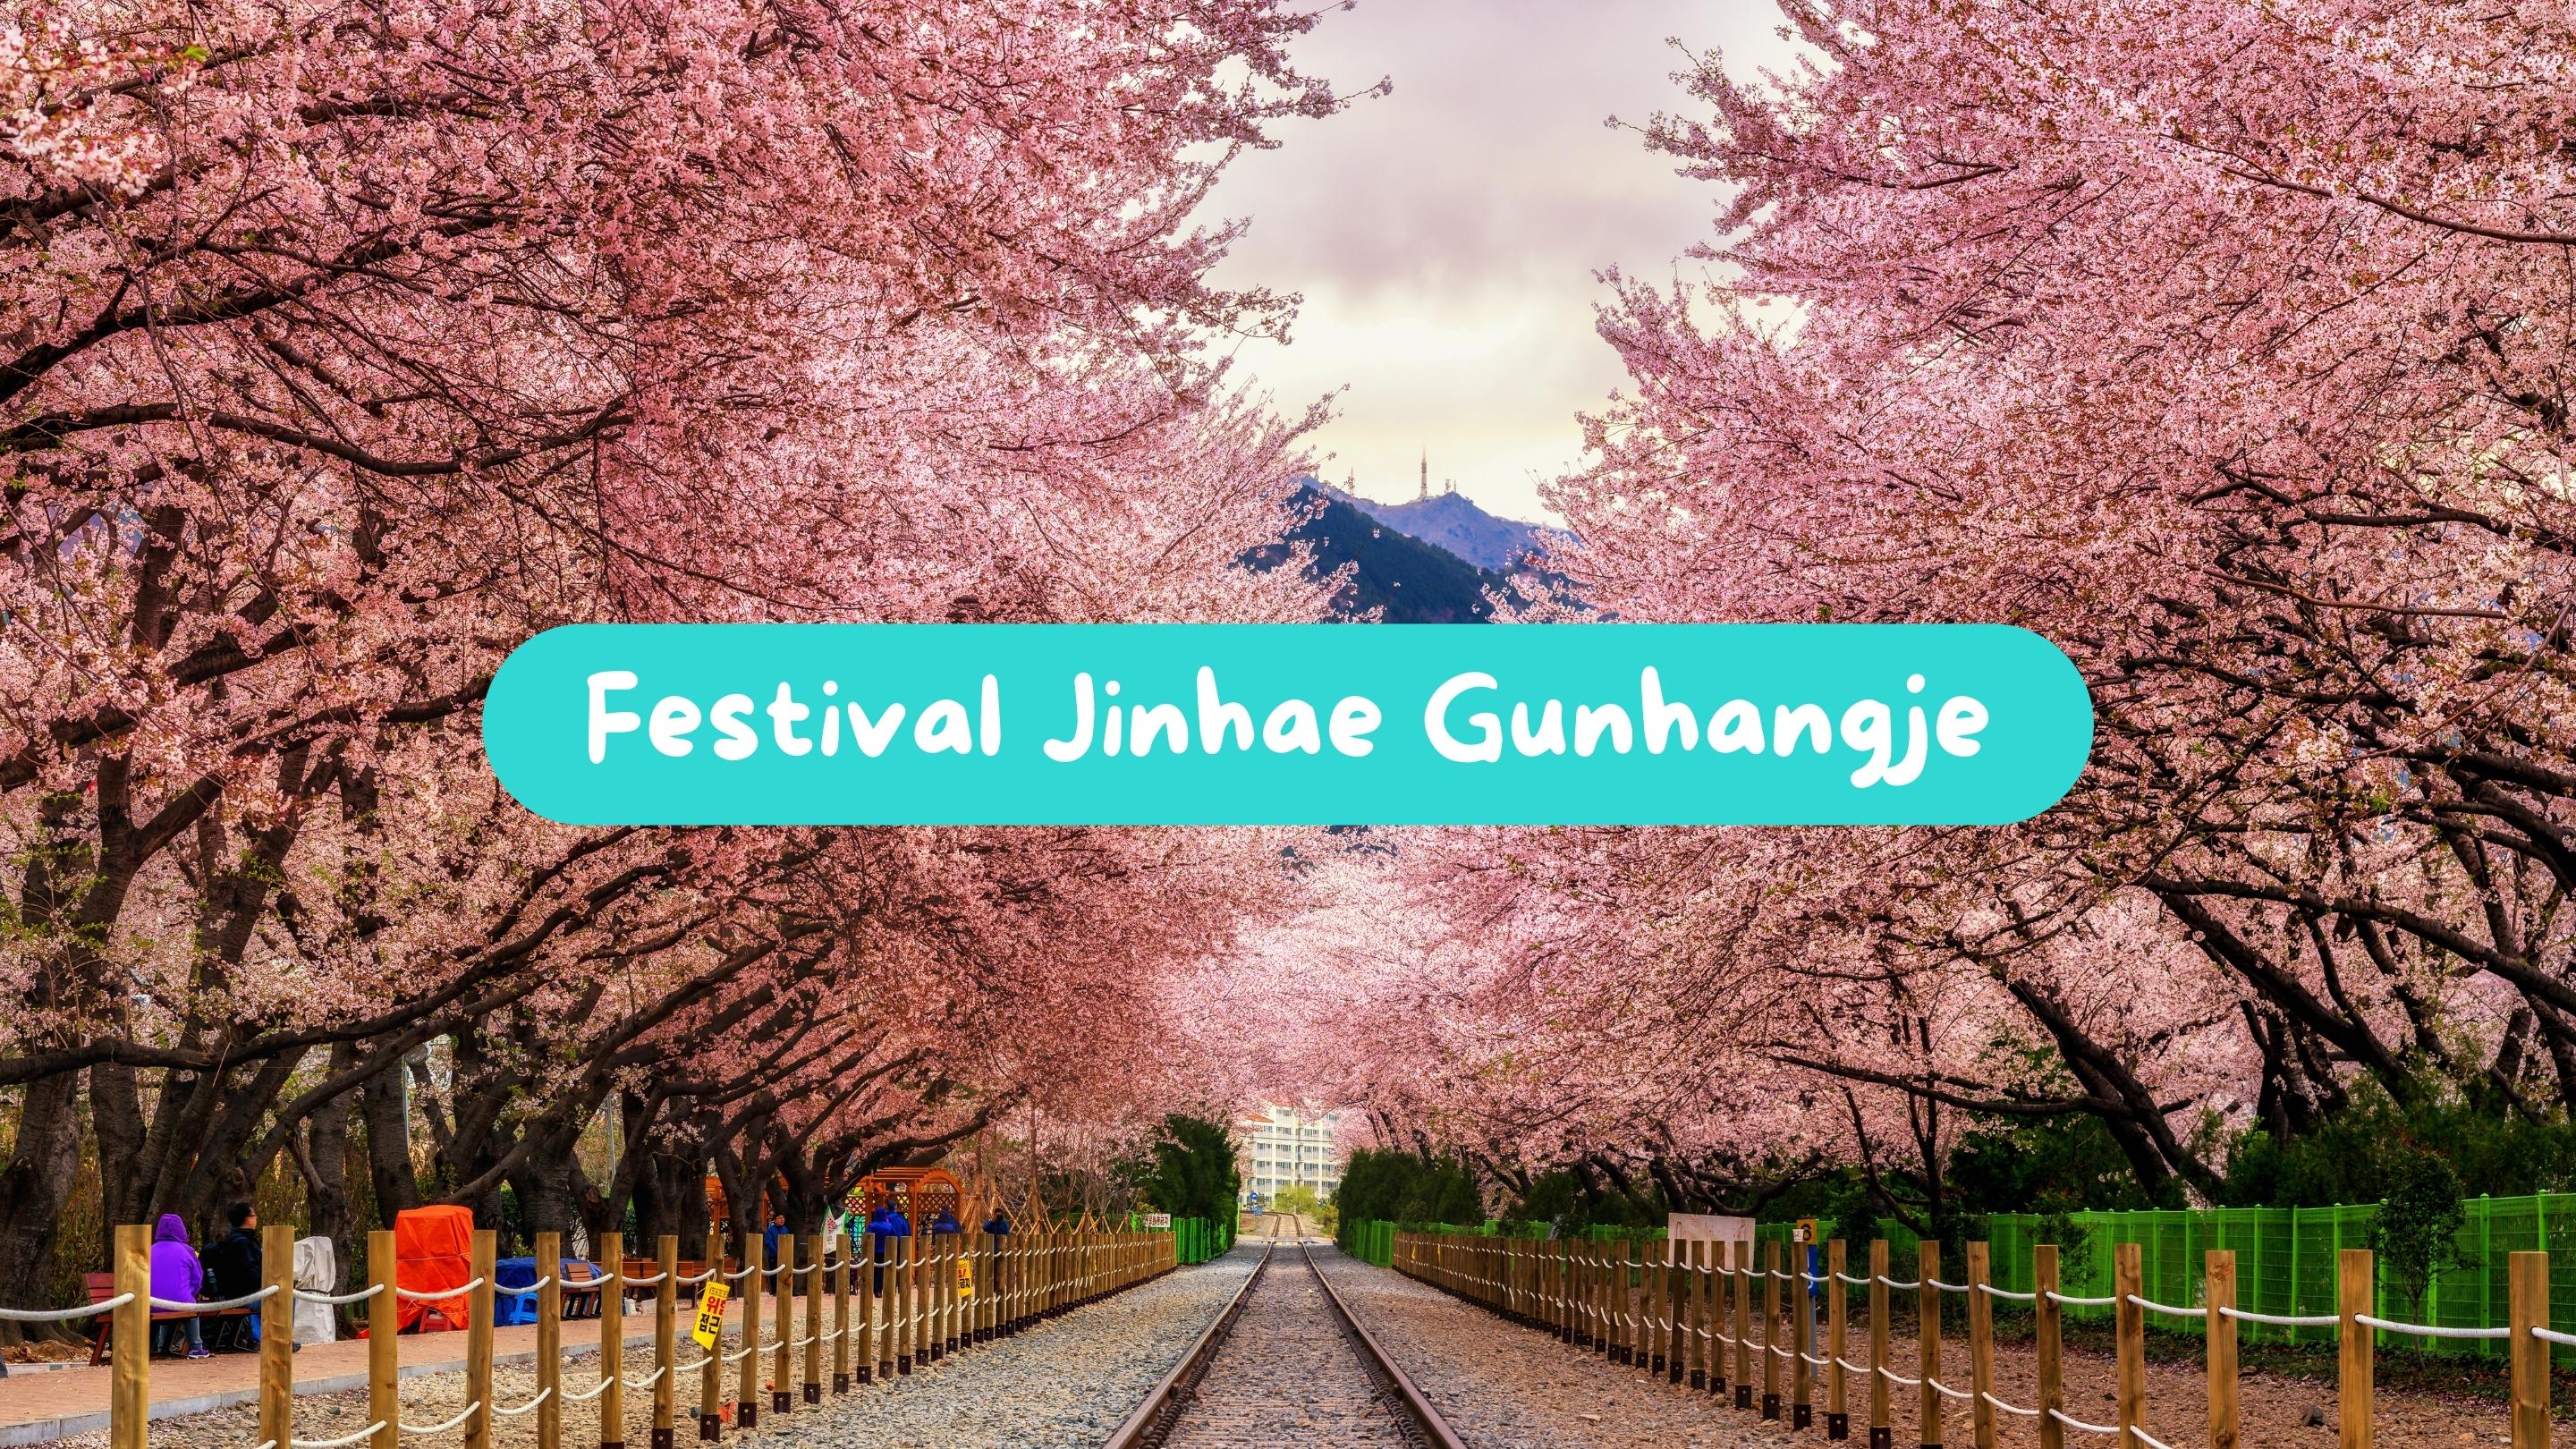 festival jinhae gunhangje